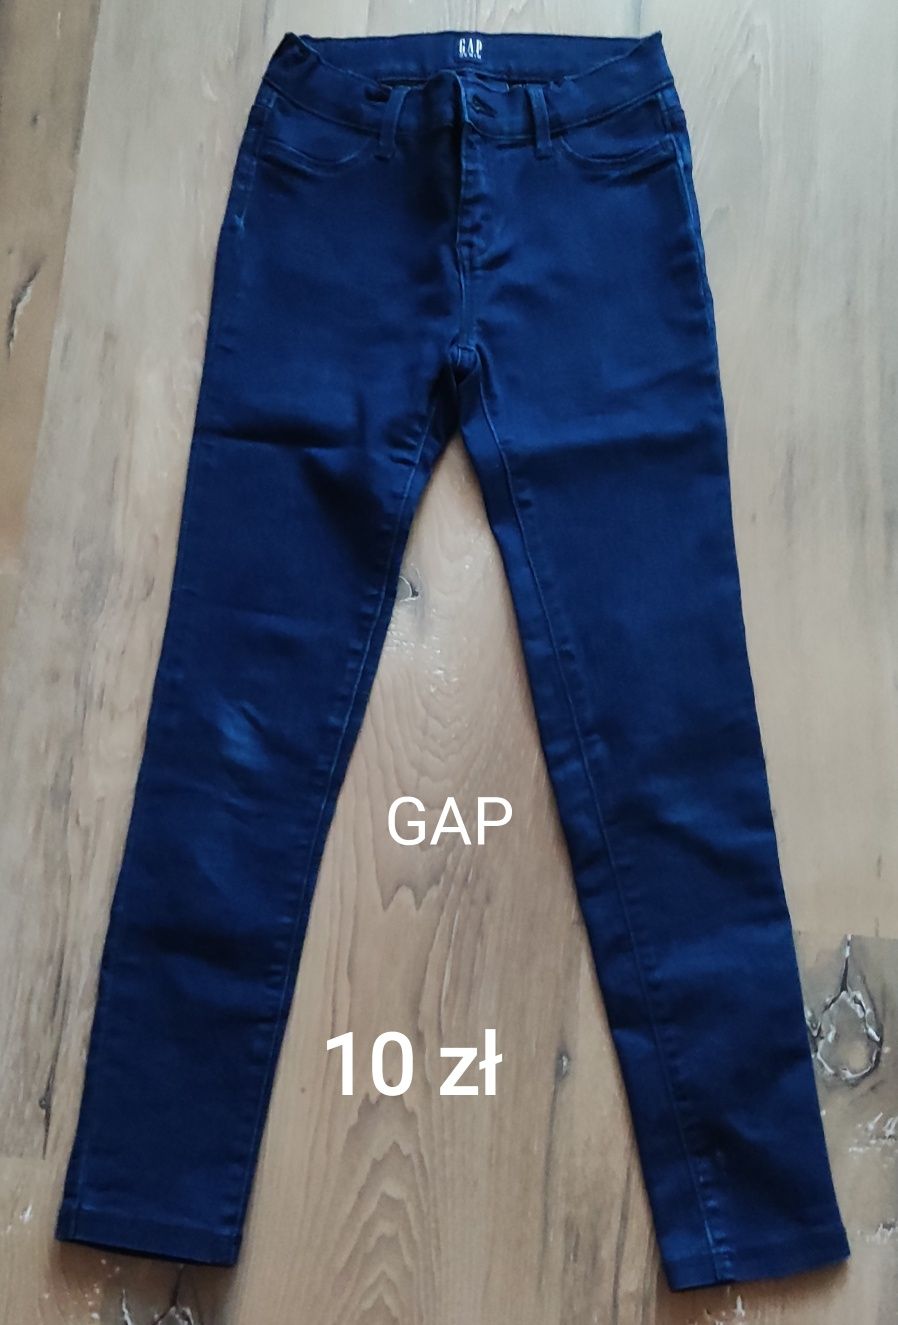 Spodnie jeansy Cubus, Only, Gap roz. 140